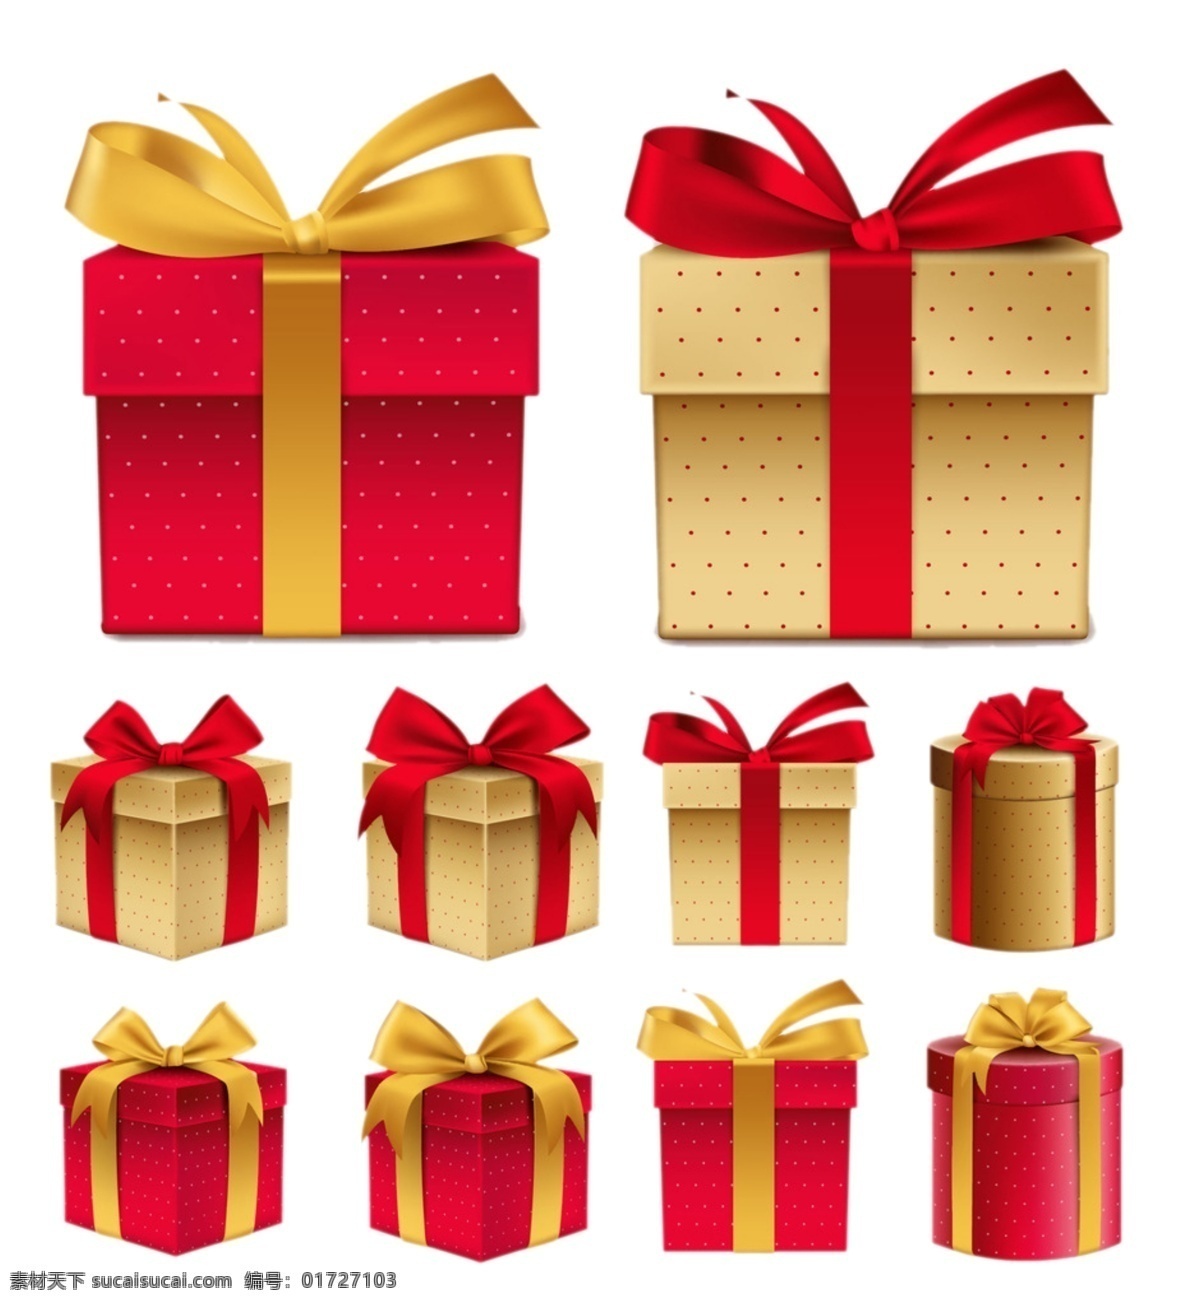 礼物图片 礼物 礼盒 盒子 礼物盒 红色礼物盒 黄色礼物盒